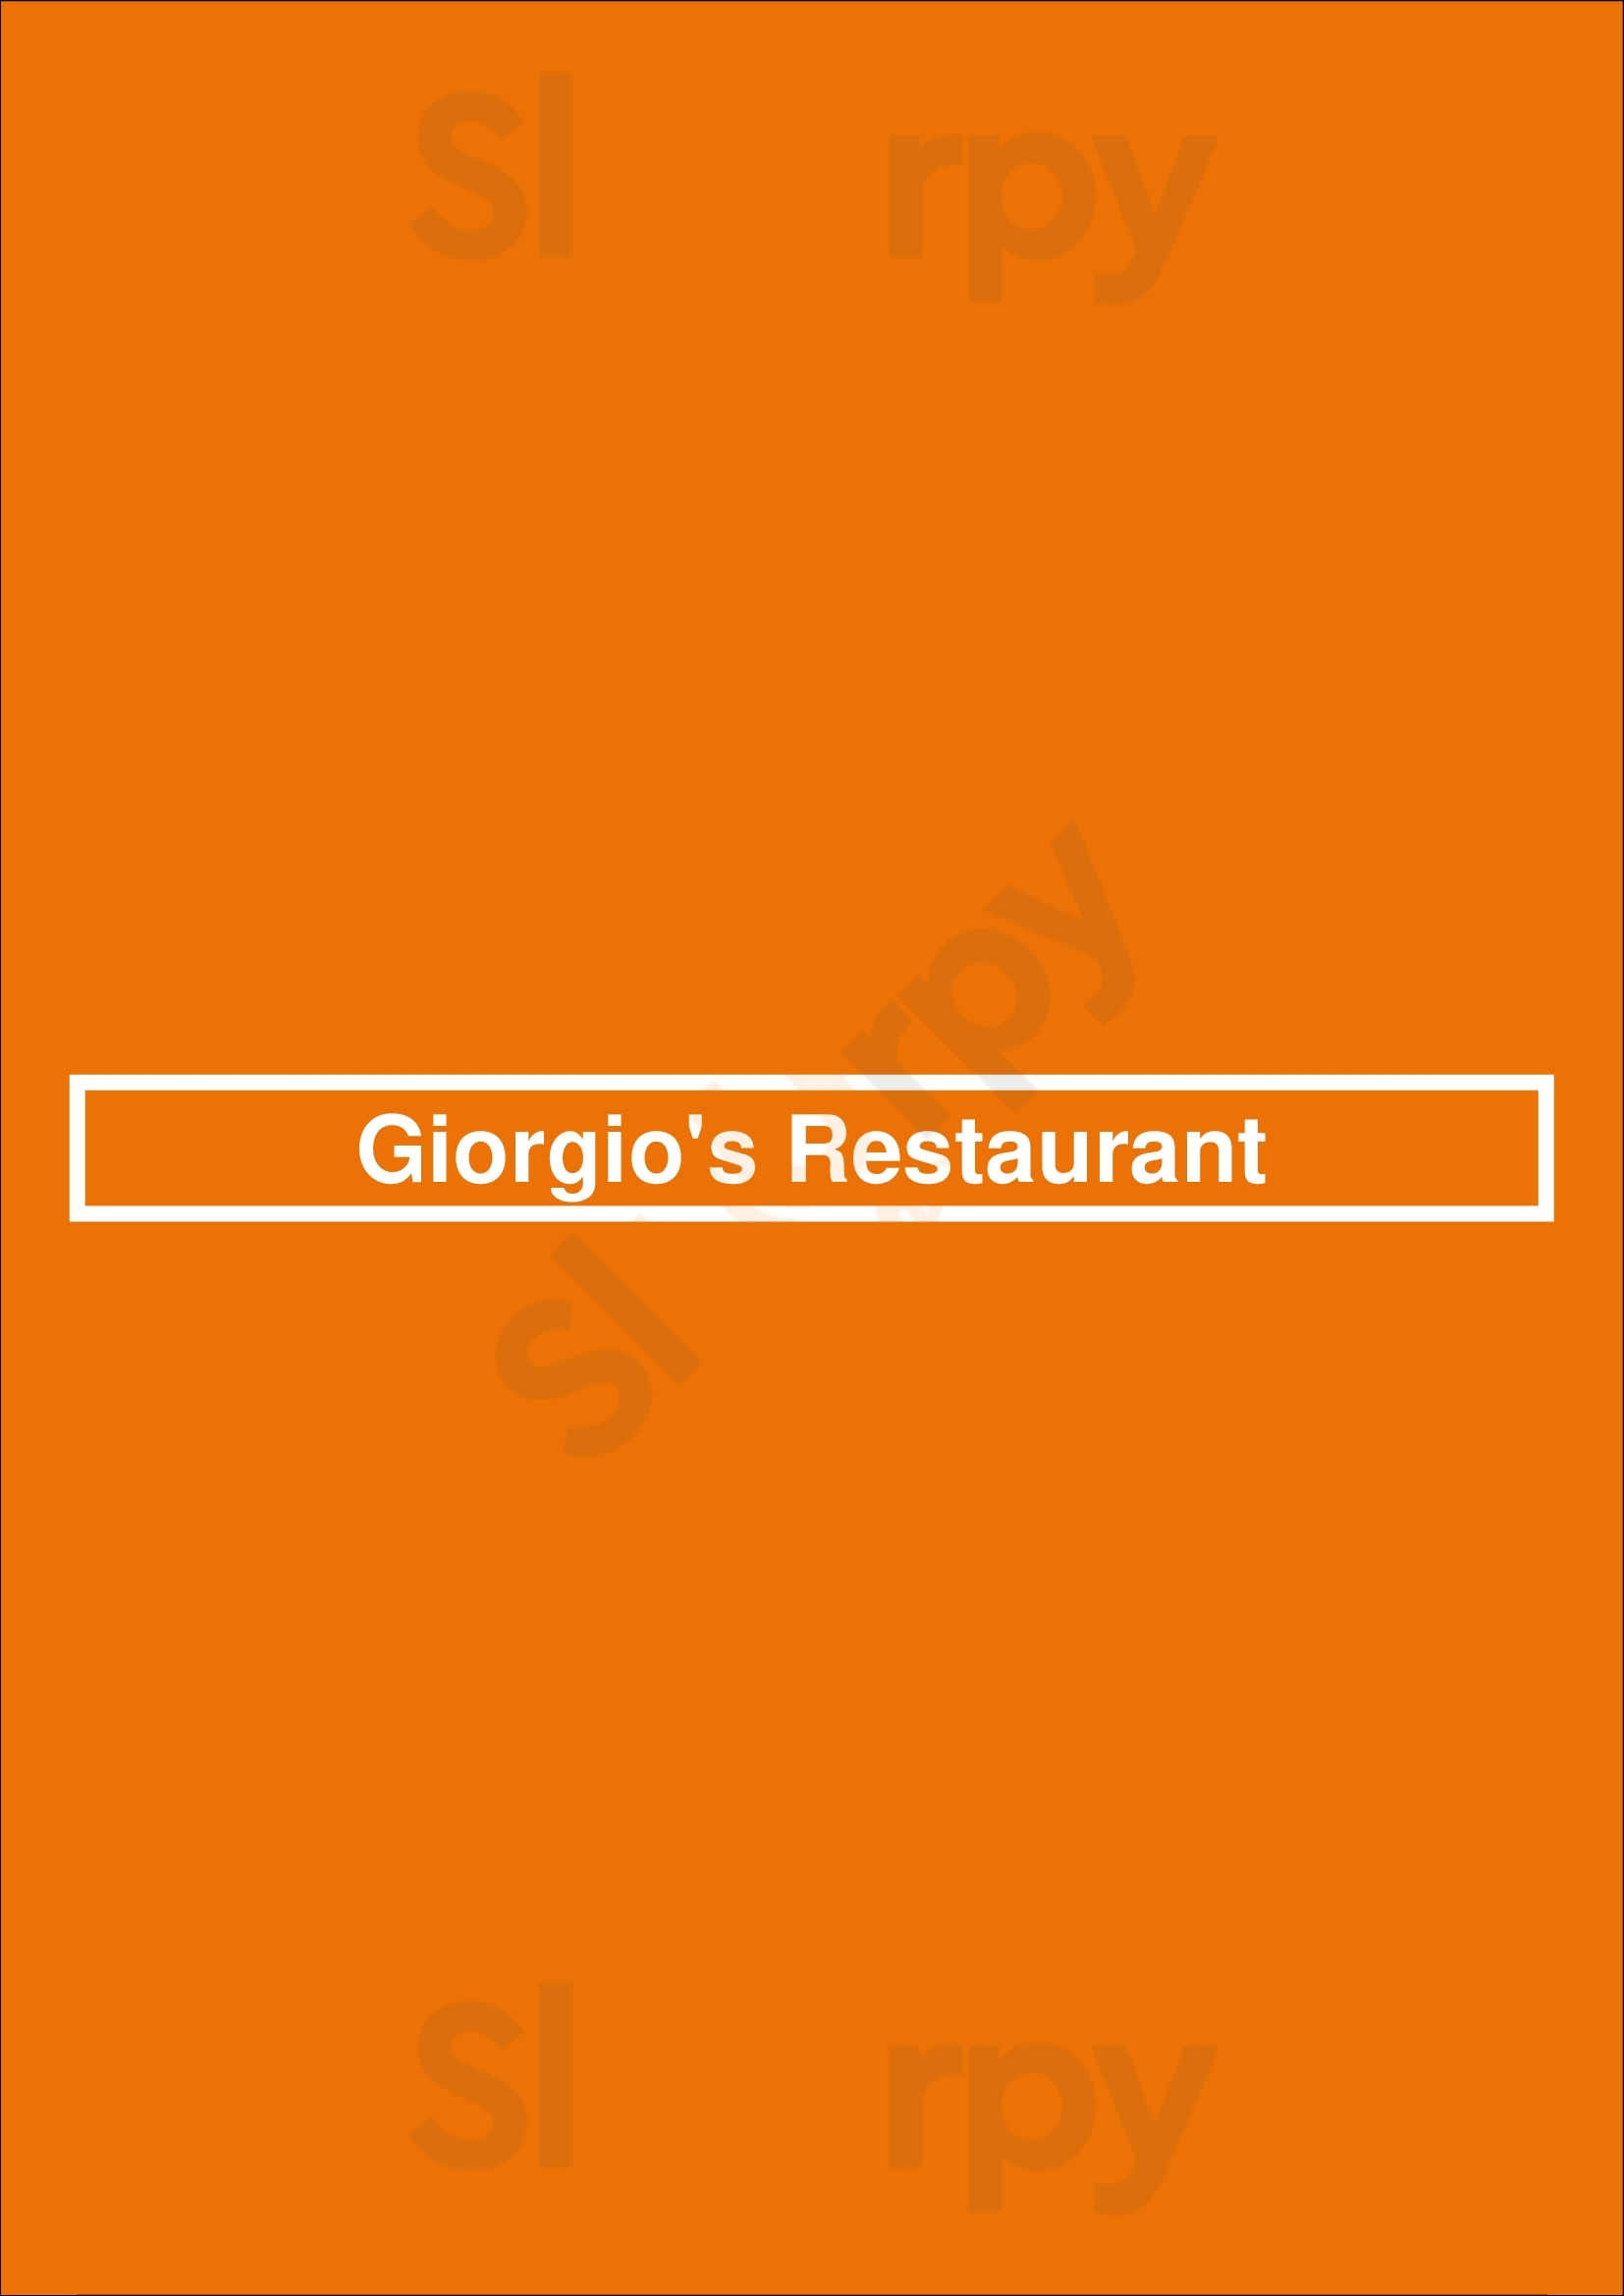 Giorgio's Restaurant Baltimore Menu - 1